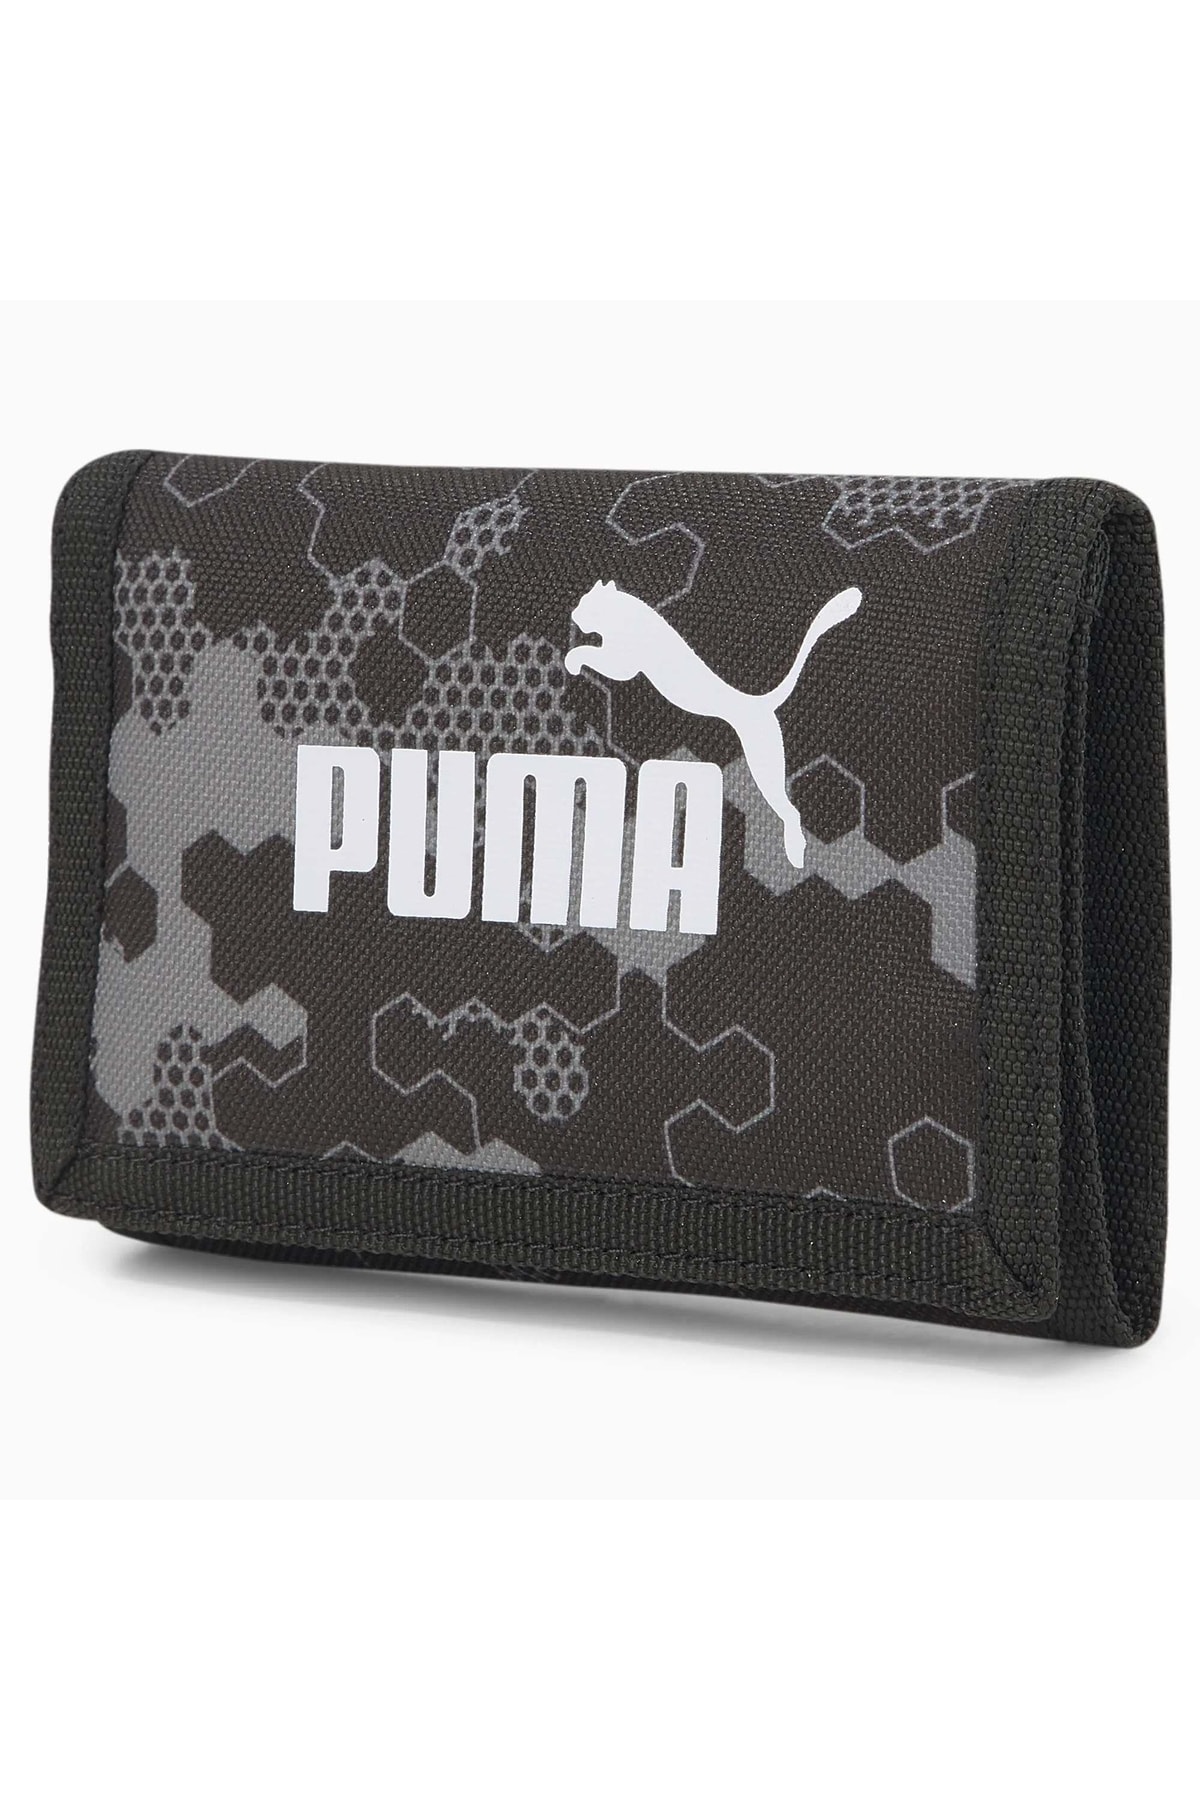 Puma 078964-10 Phase Aop Wallet Spor Cüzdan